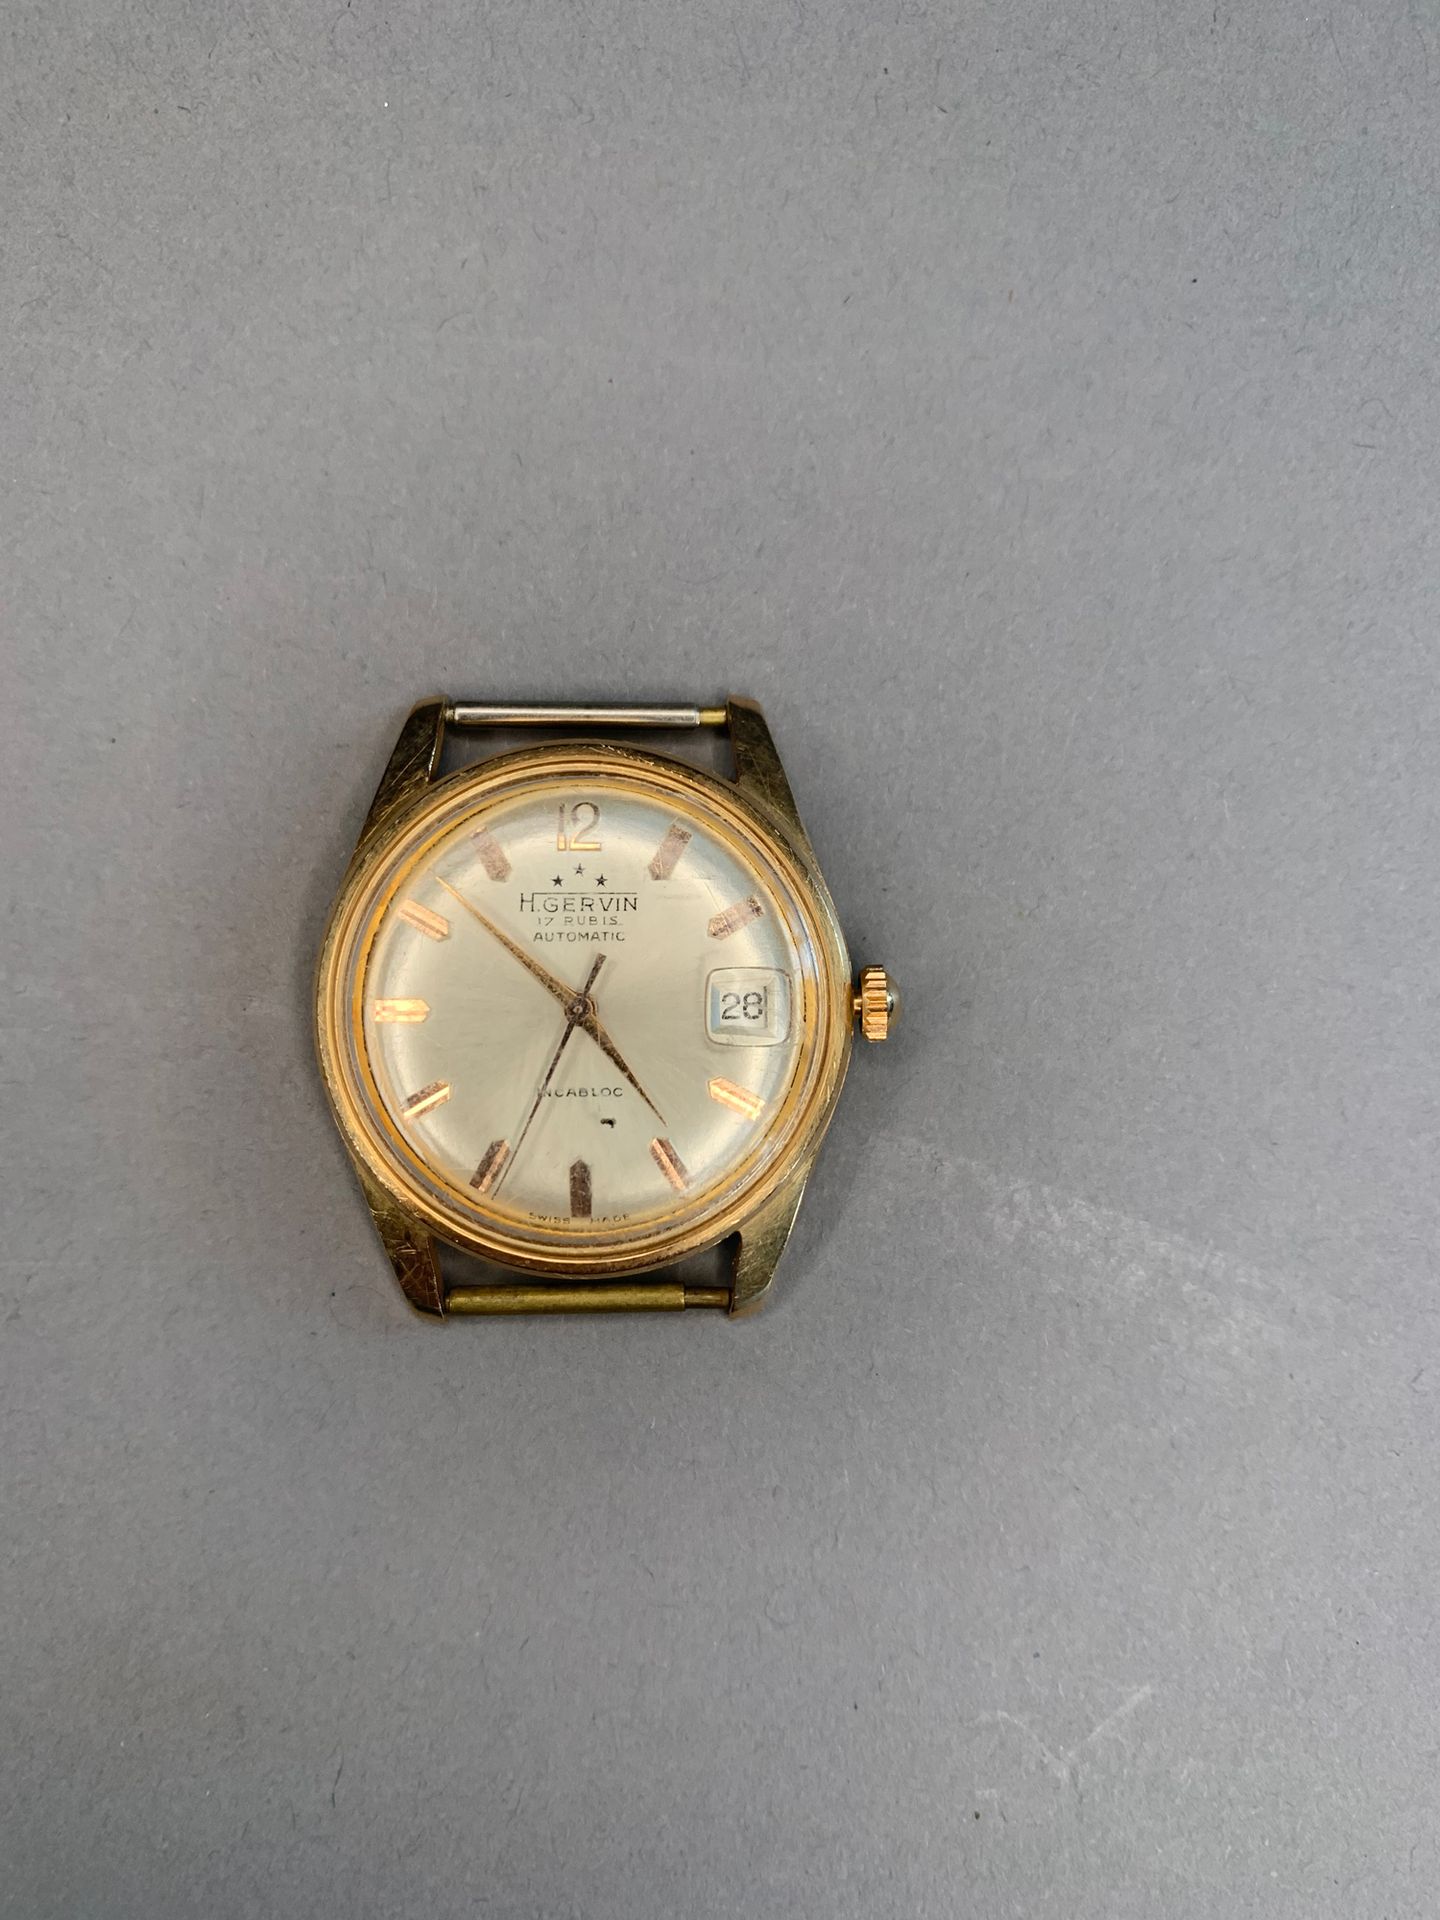 H. GERVIN Boîtier de montre en or jaune 18 K.
Boîtier rond, cadran crème, index &hellip;